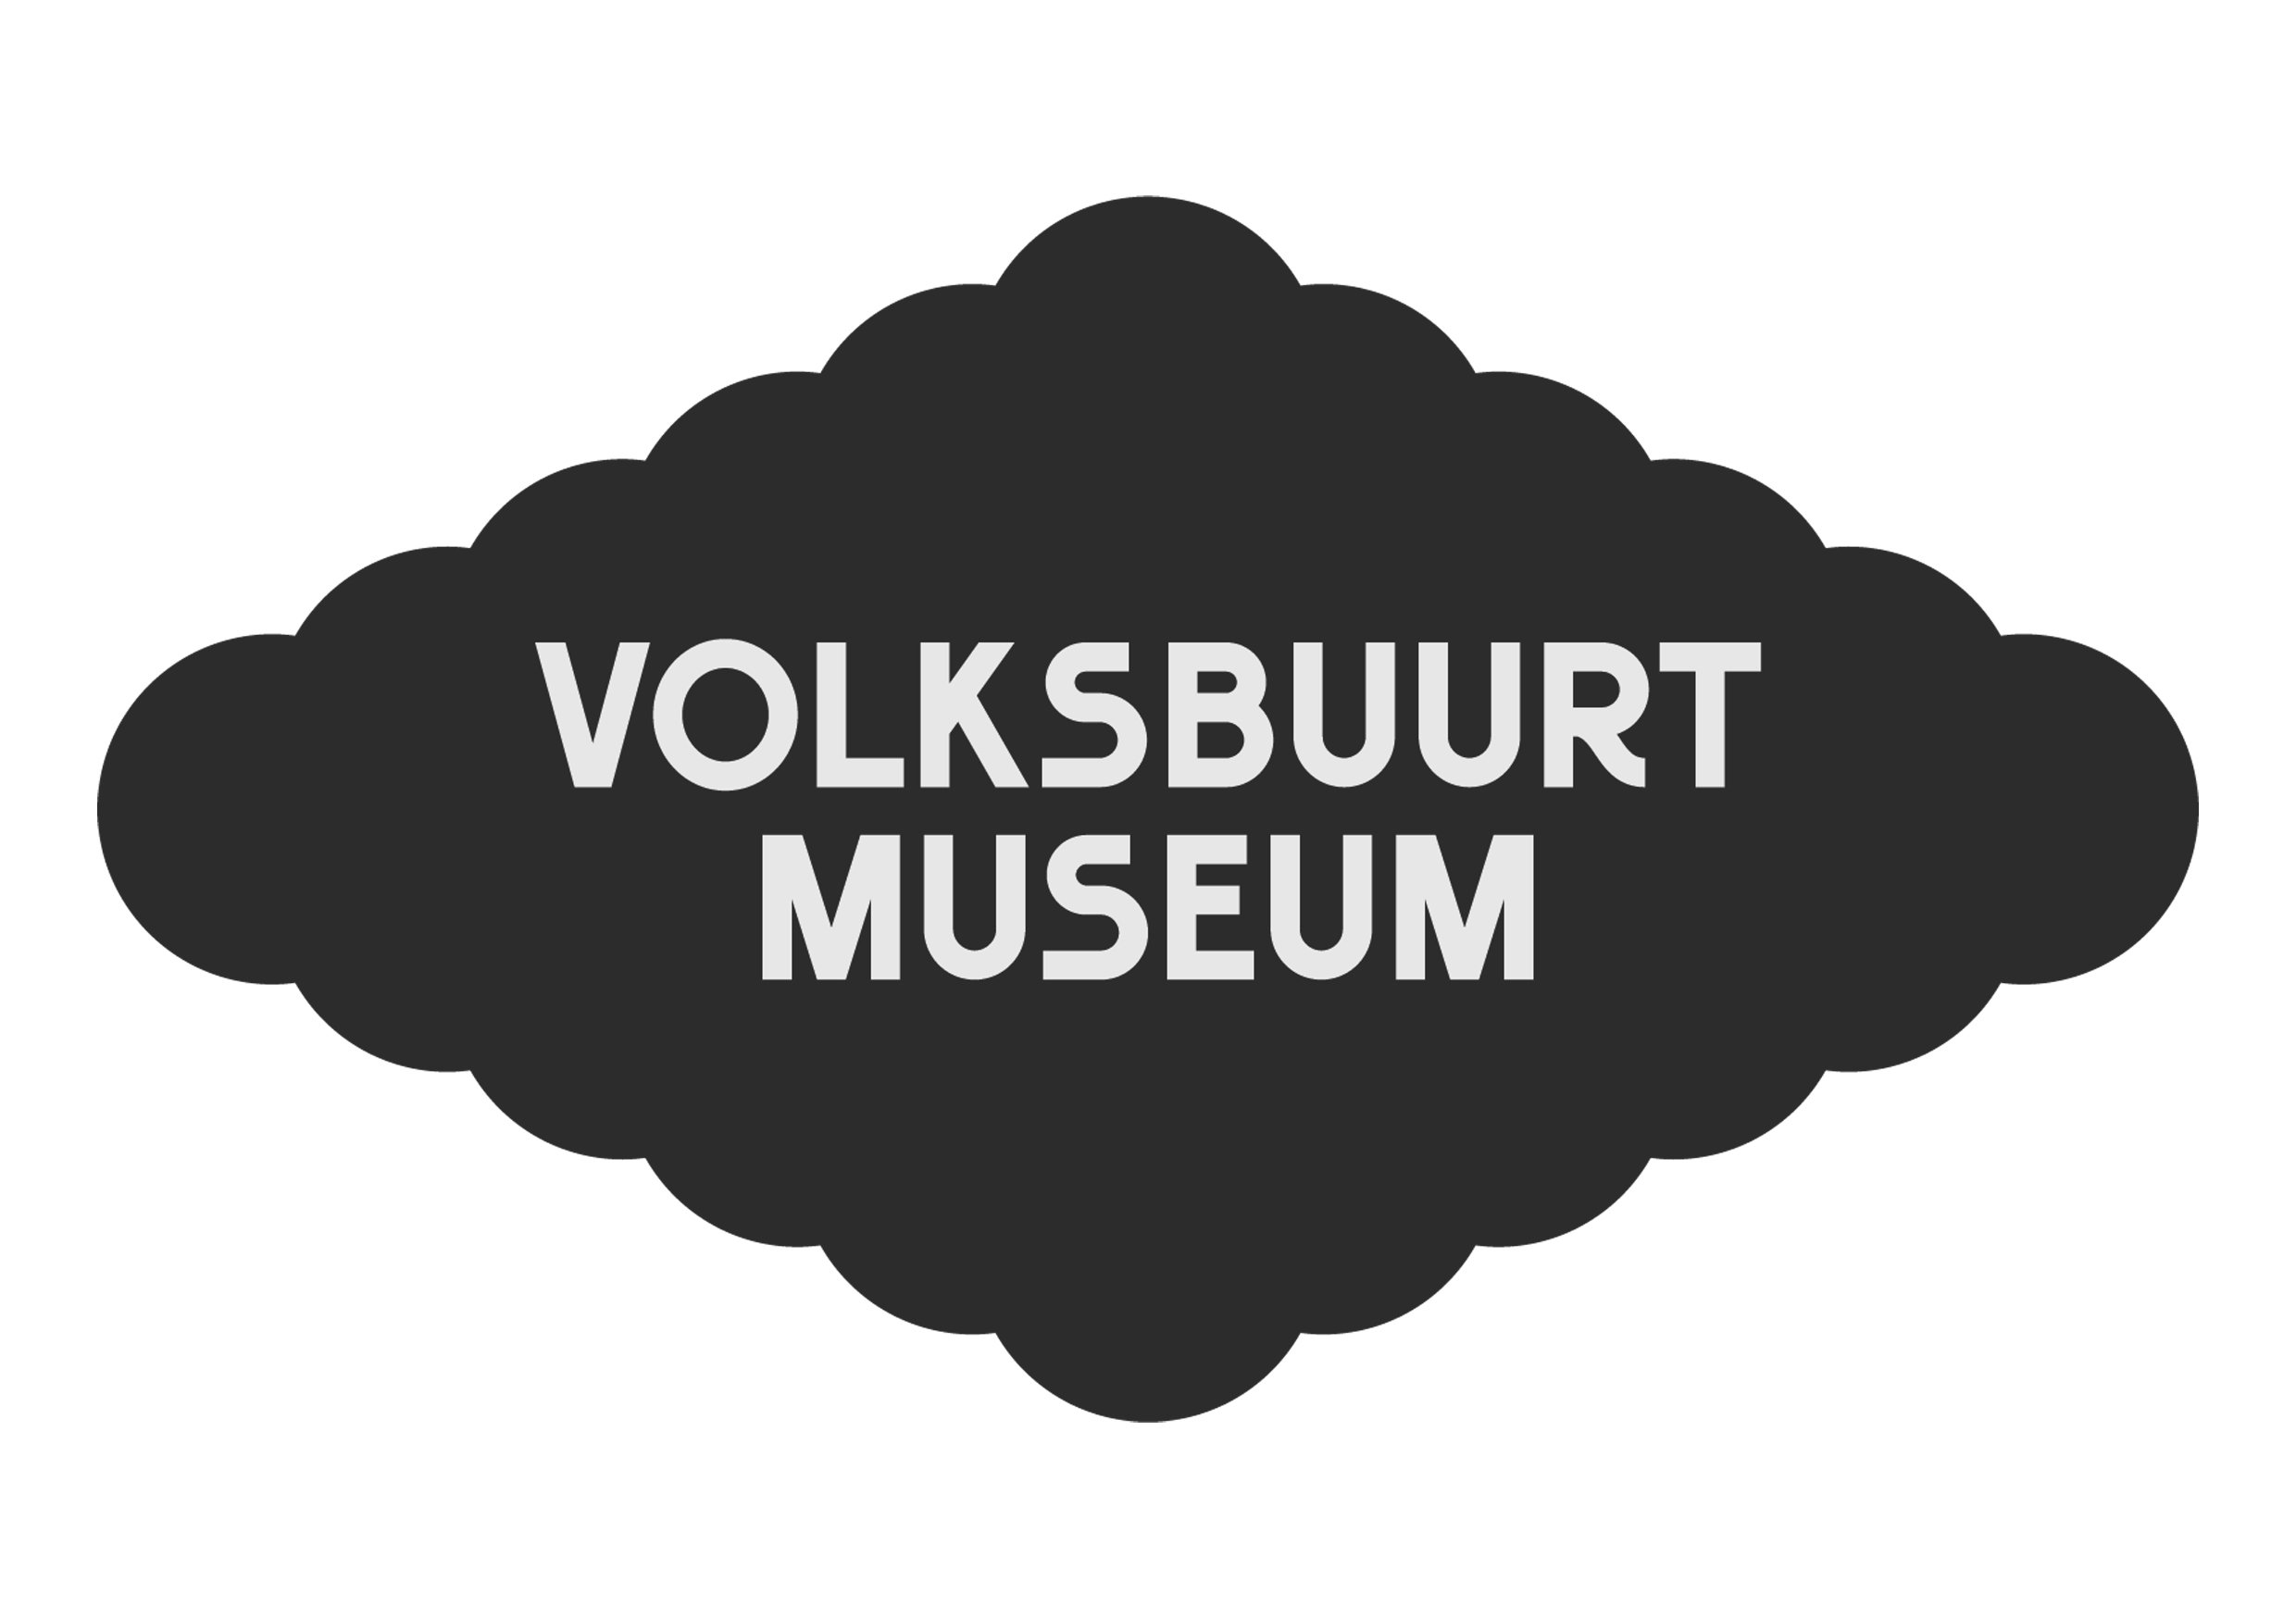  https://www.rogiermartens.nl/#/volksbuurtmuseum/ 